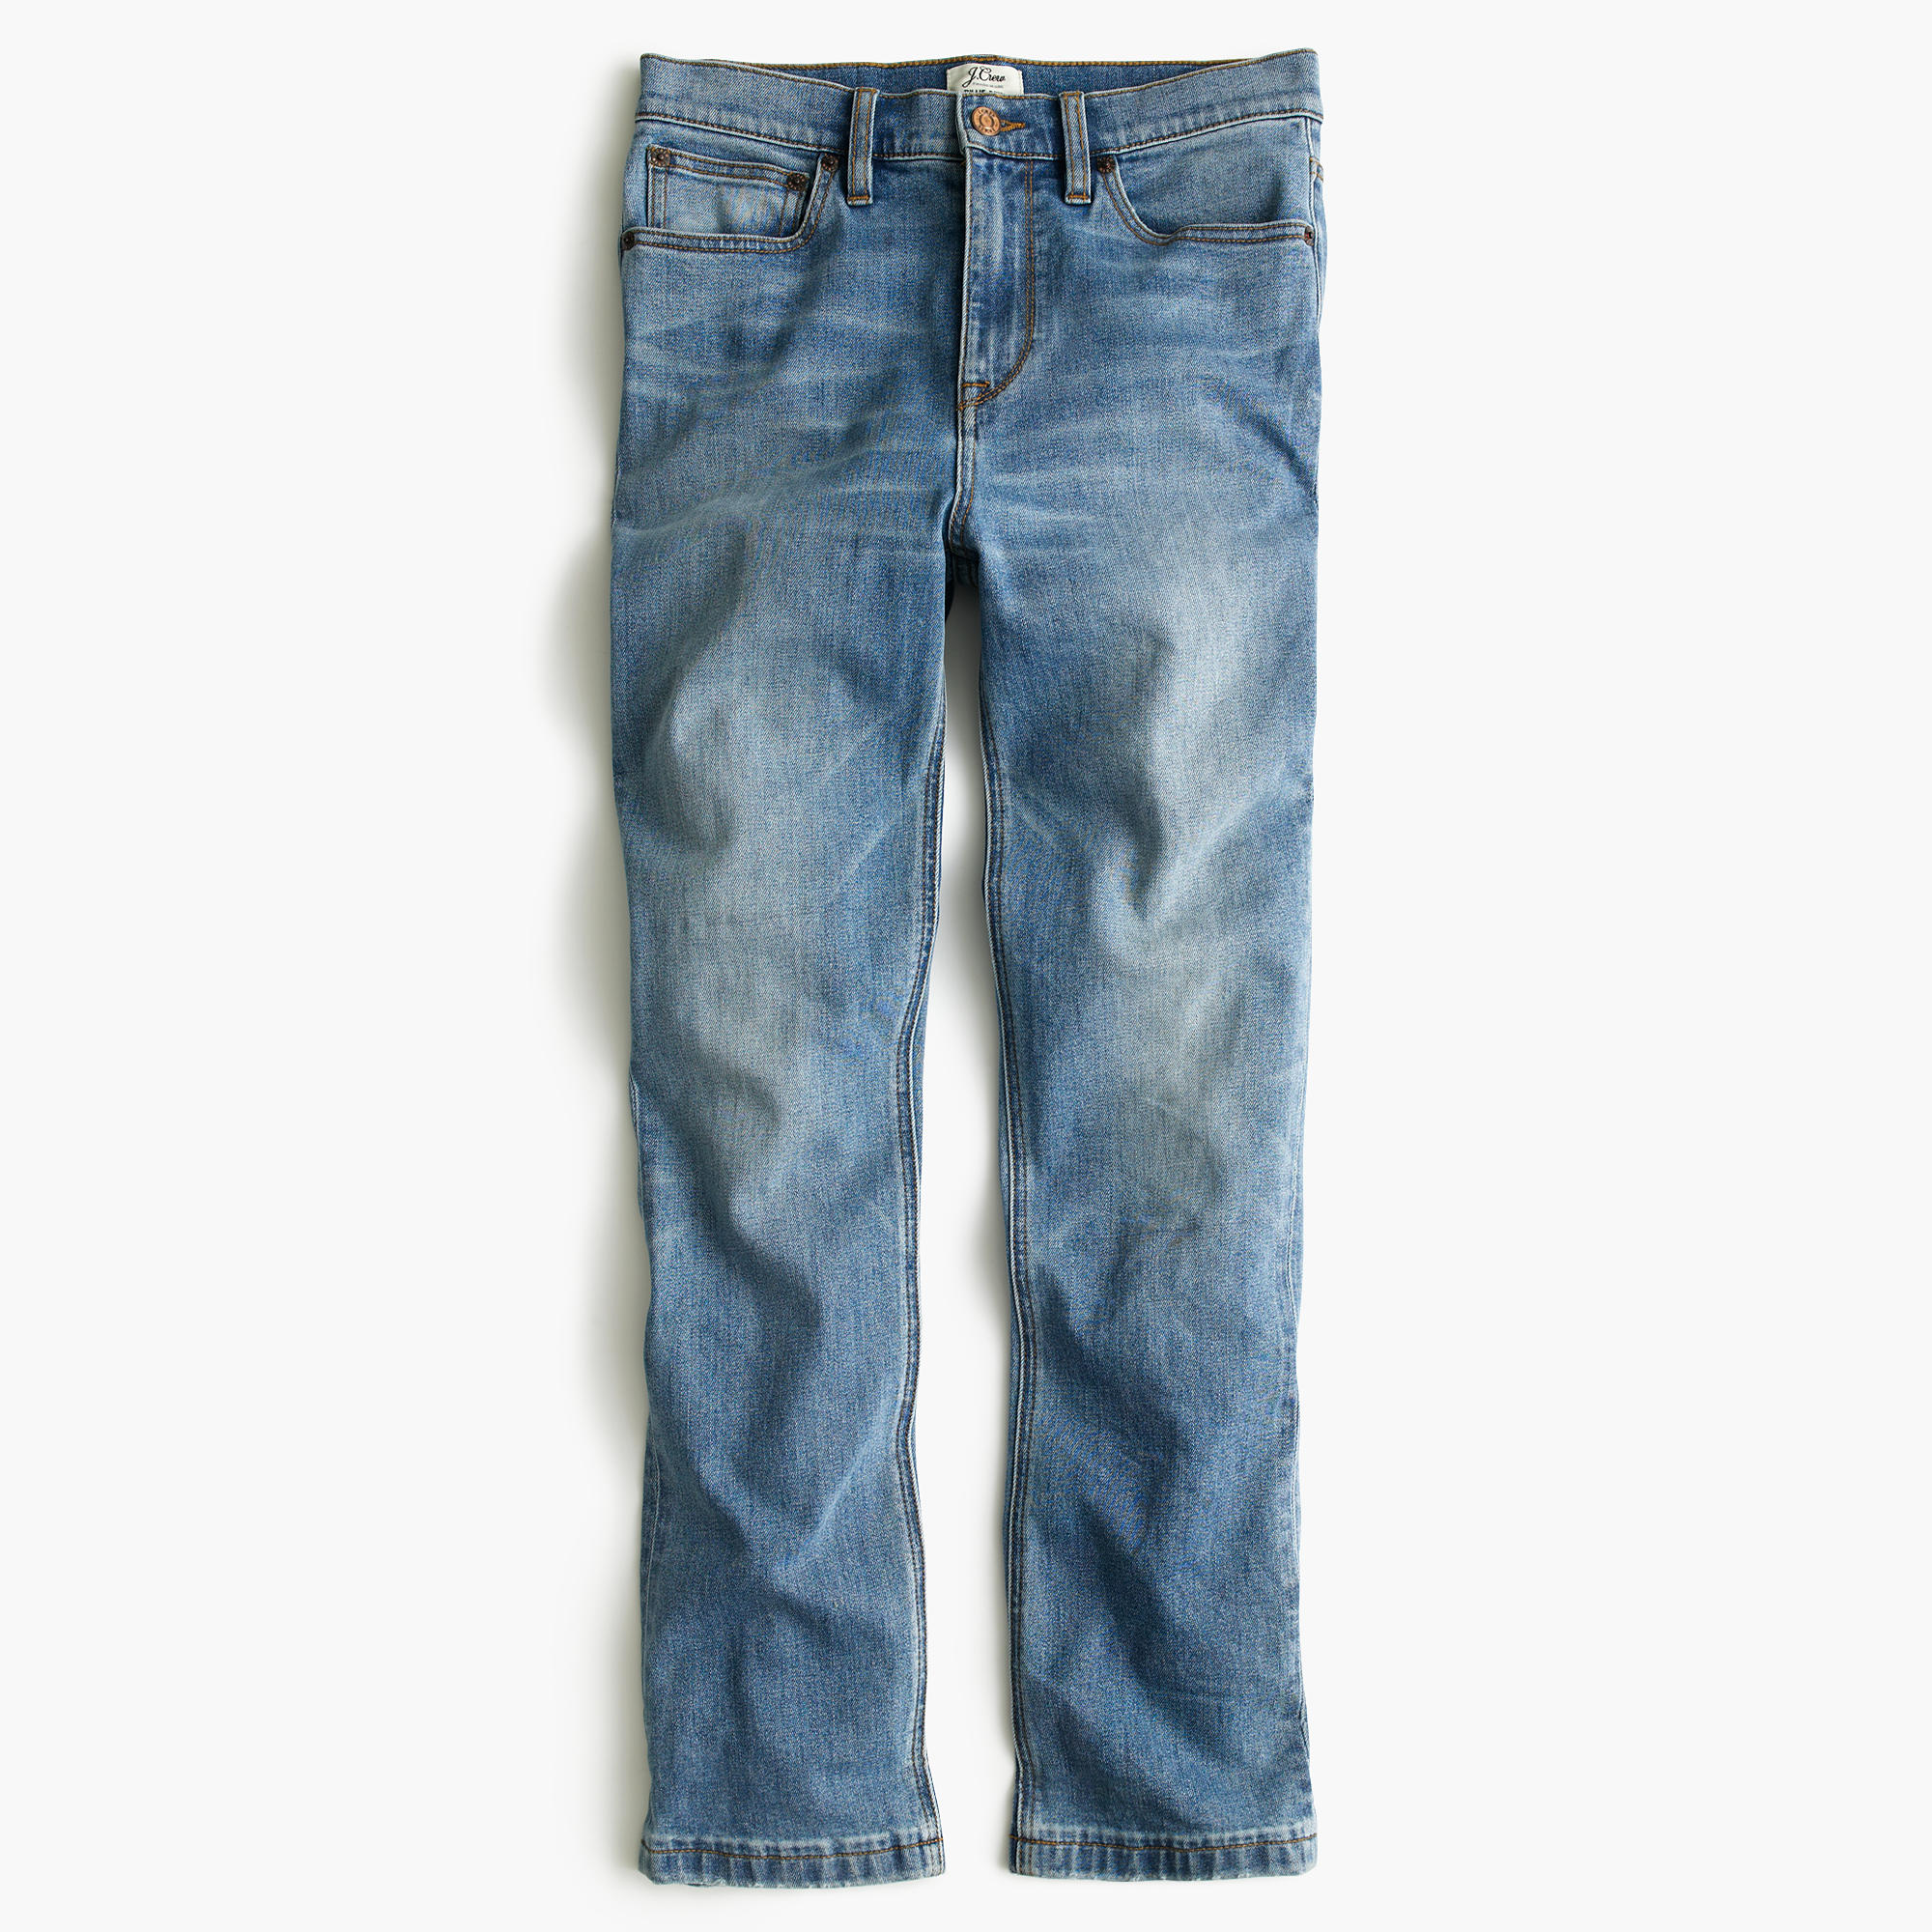 Jcrew jeans sale